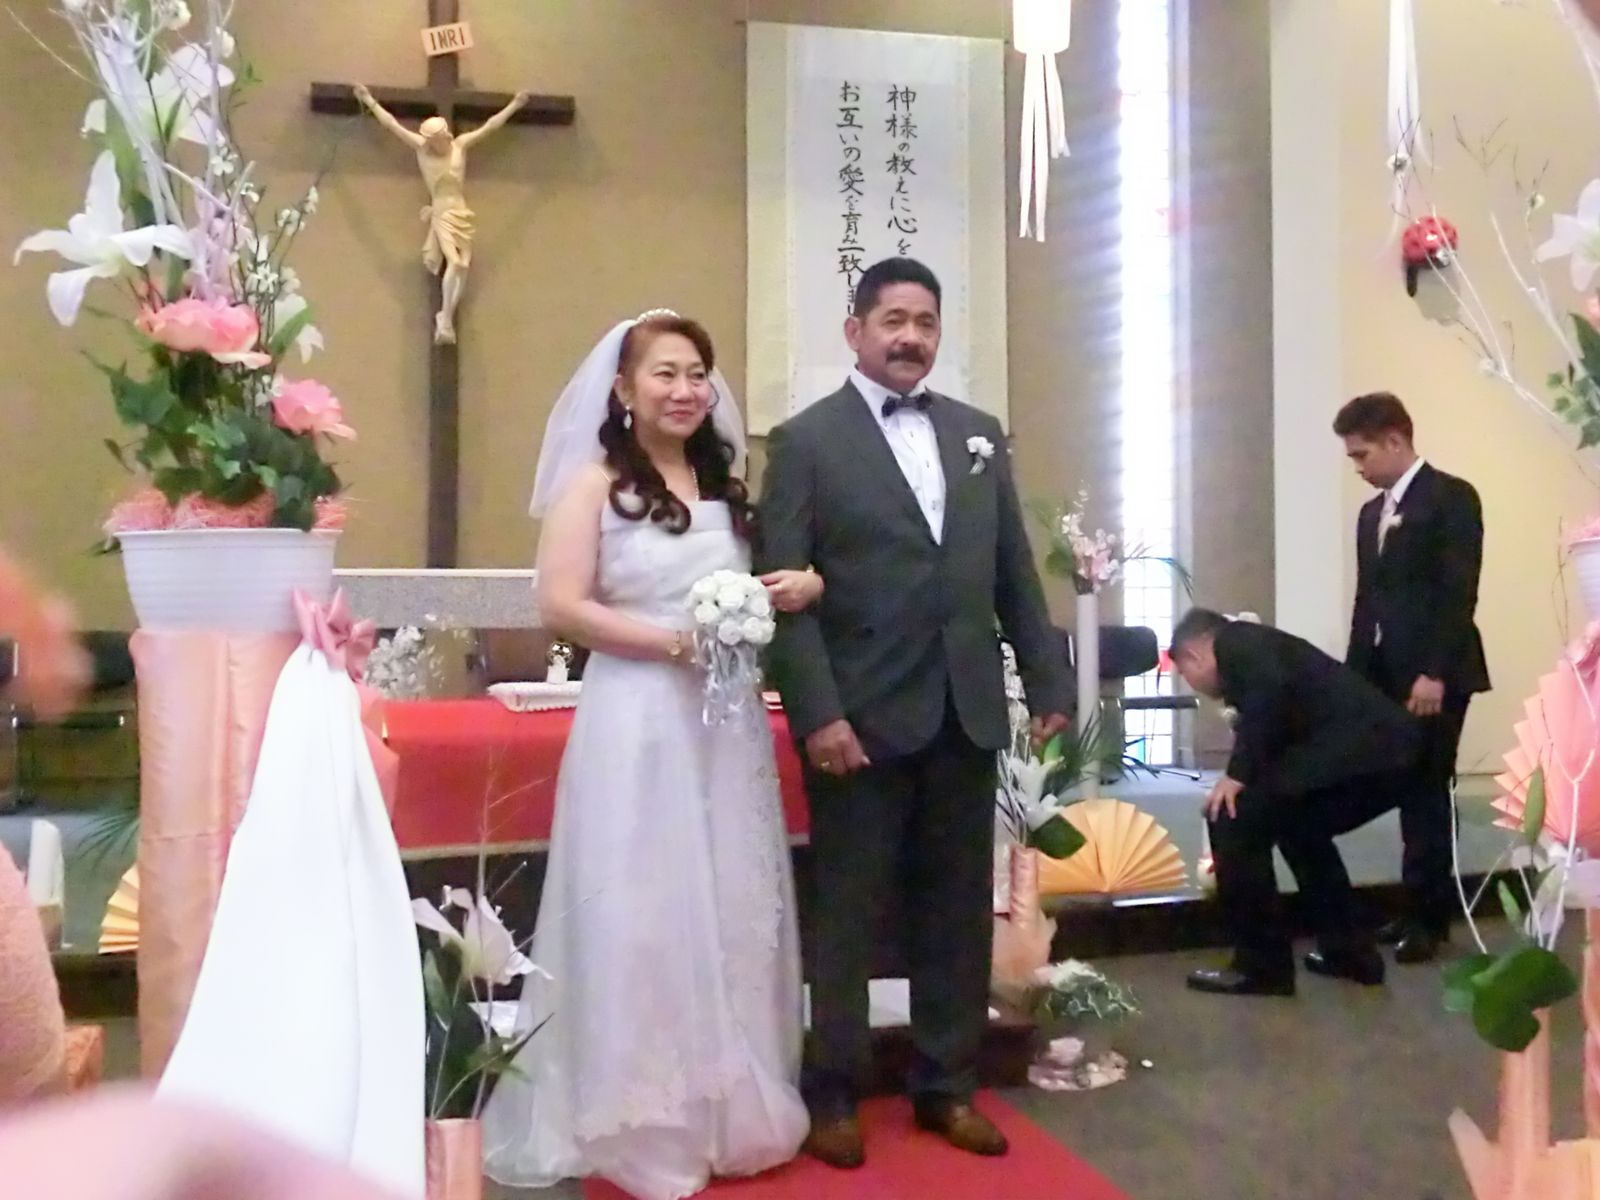 オクさん夫妻の熟年 結婚式 伊勢崎カトリック教会で かれんちゃんのパパ